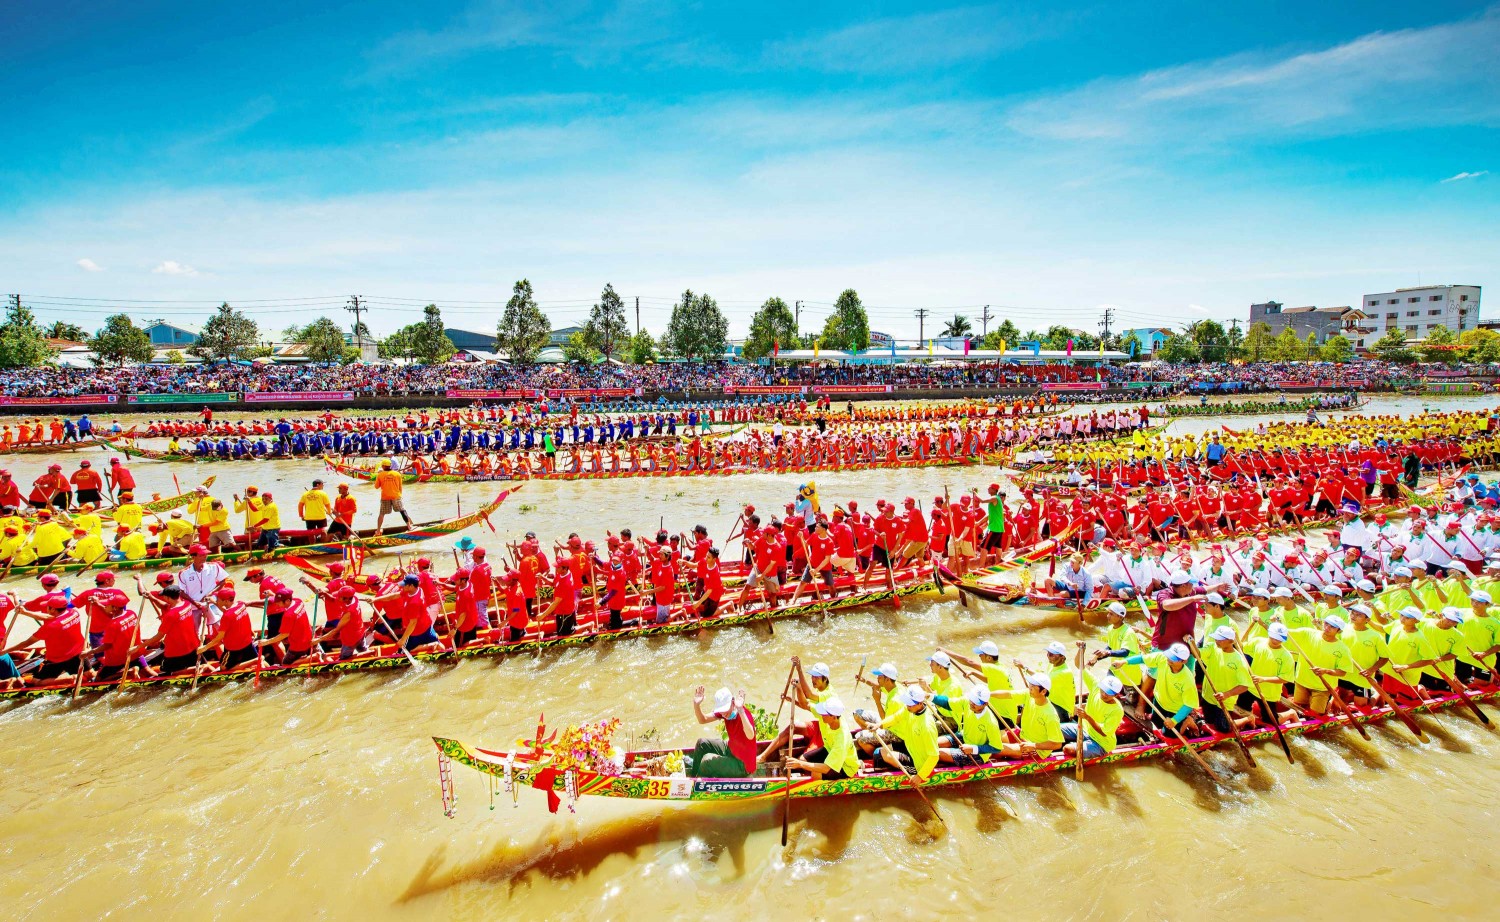 Đua ghe Ngo - lễ hội dân gian mang đậm nét văn hóa đặc trưng của đồng bào dân tộc Khmer ở đồng bằng Sông Cửu Long, tổ chức định kỳ hai năm/lần tại tỉnh Sóc Trăng_Ảnh: phuhunglife.com